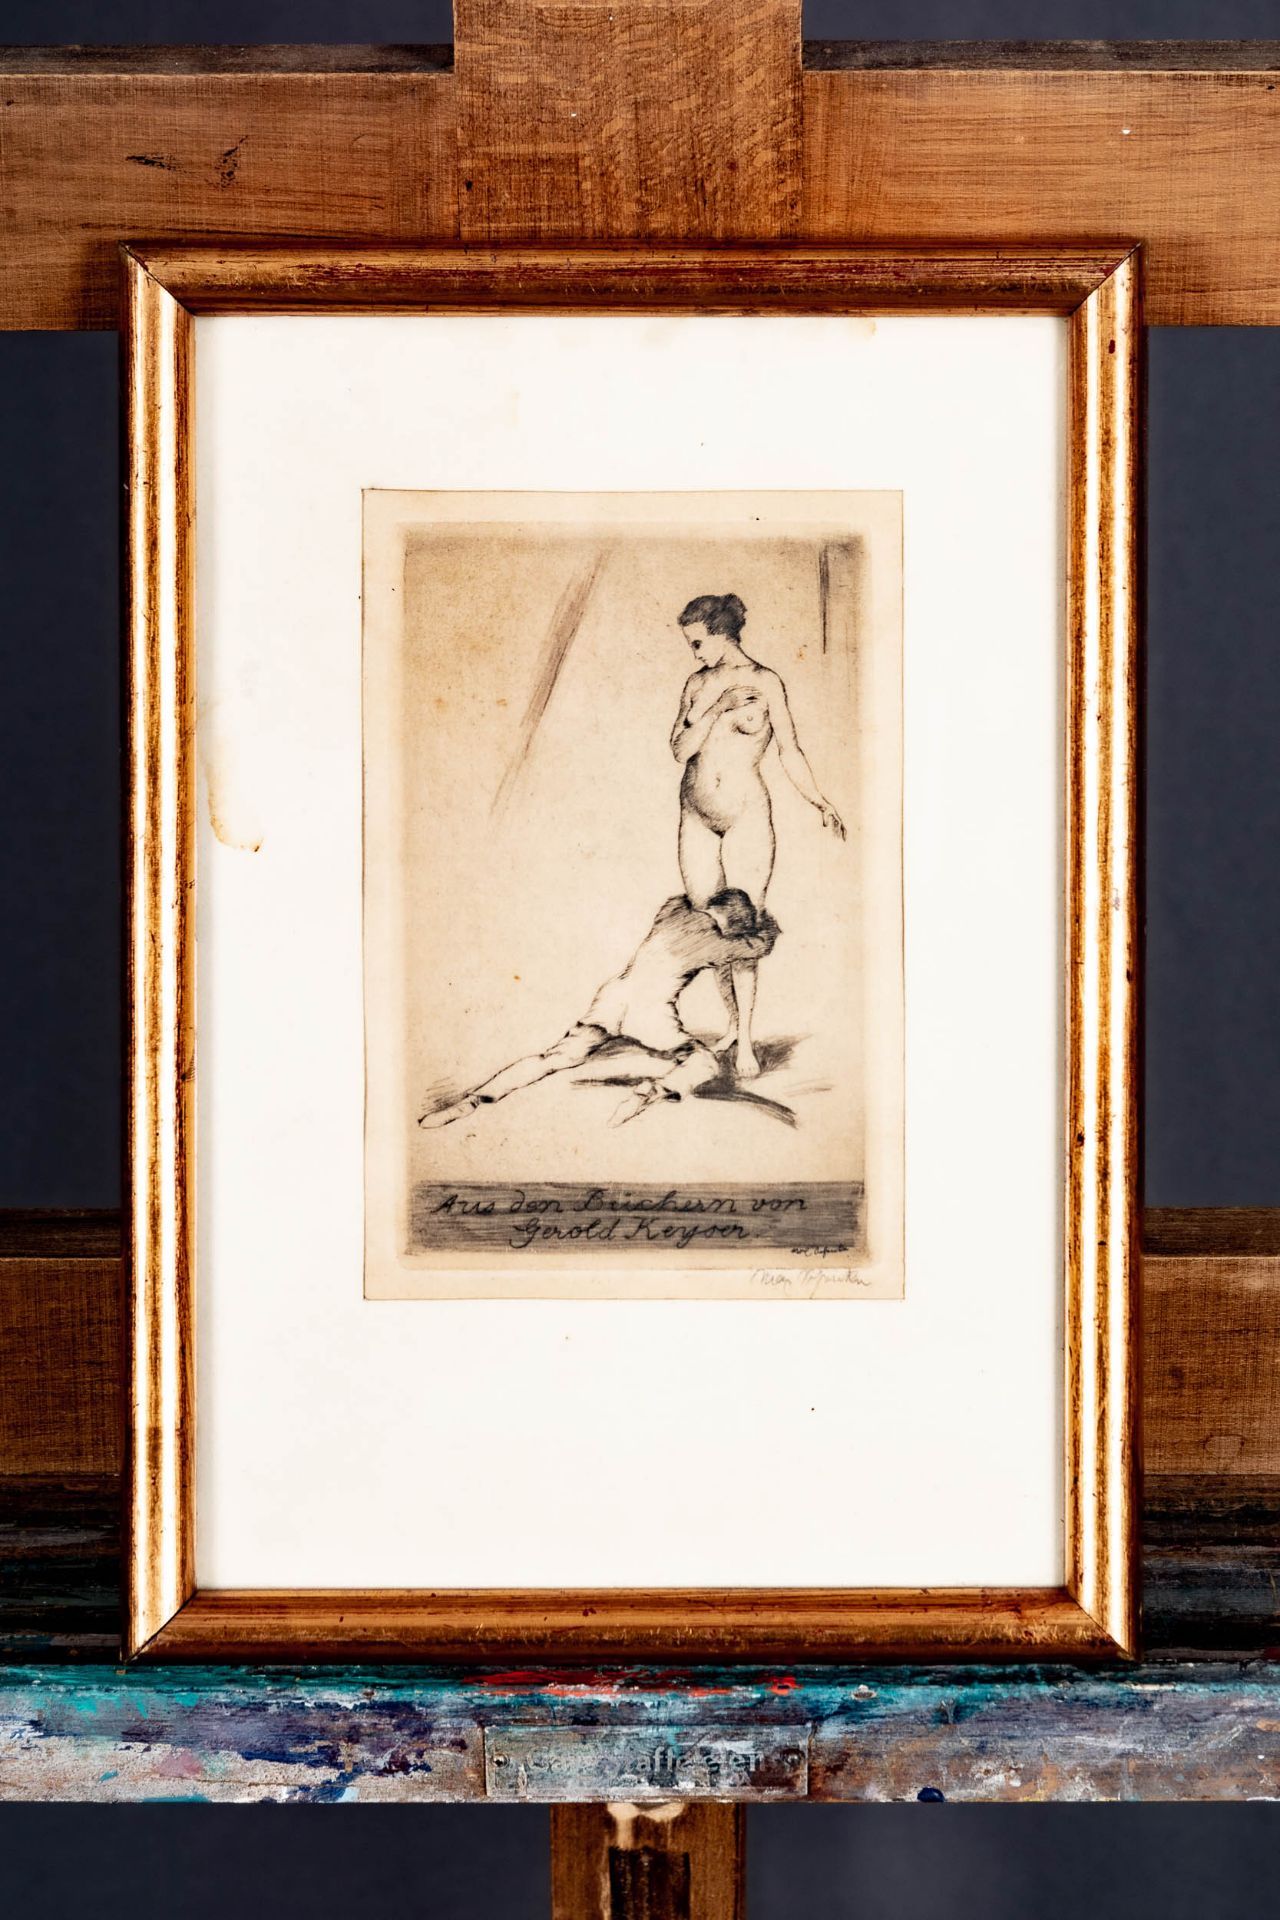 "Ergebene Liebe", hinter Glas gerahmte Radierung eines Mannes, sich an den Beinen einer nackten jun